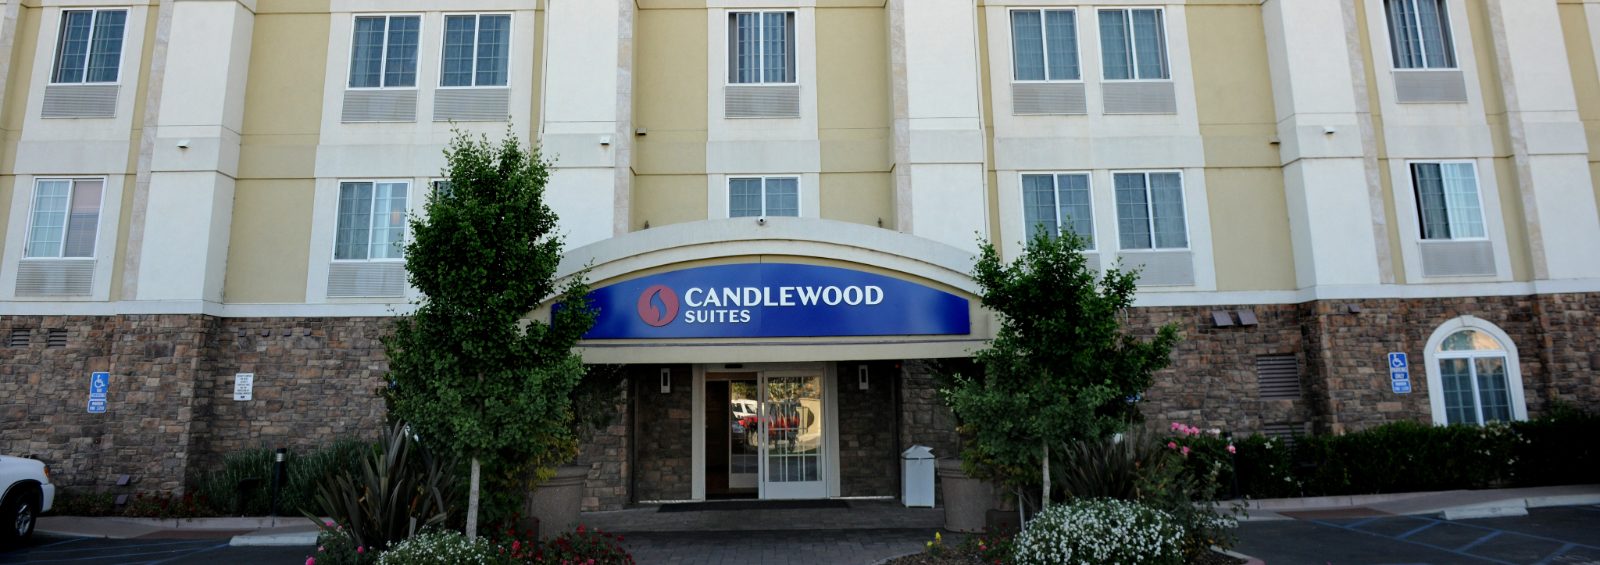 Candlewood Suites Santa Maria exterior